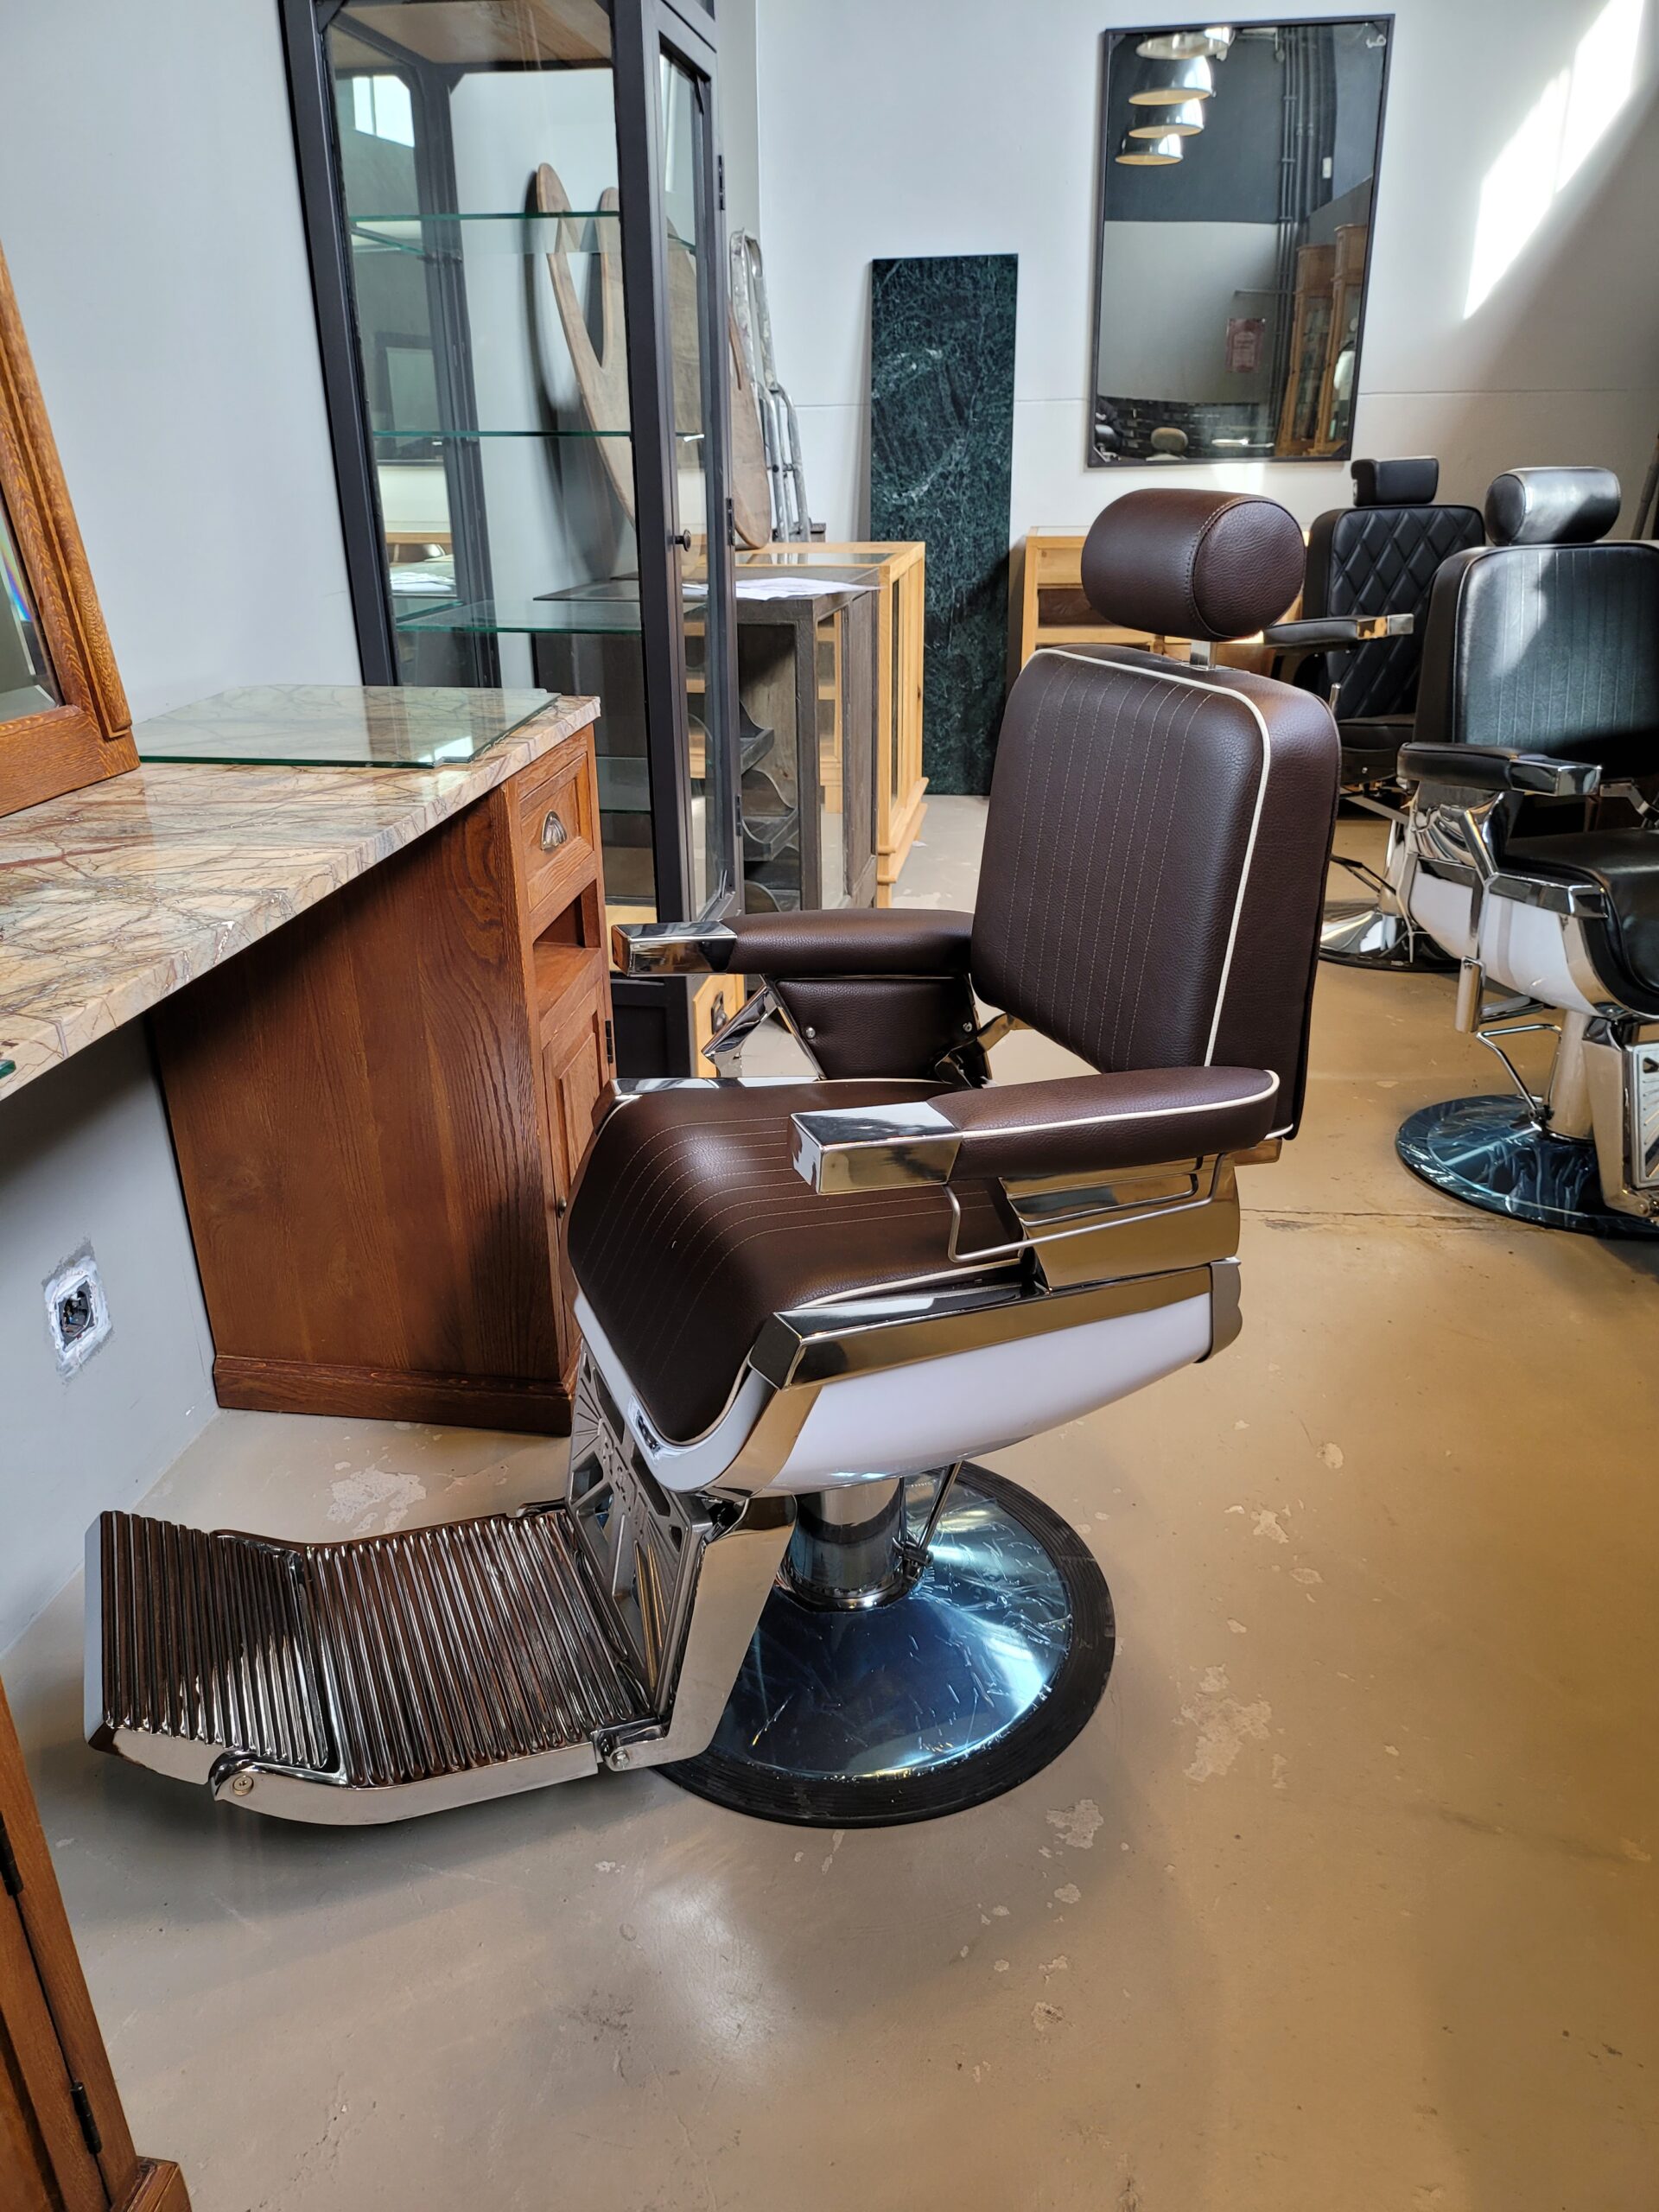 Barber chair, REM, Emperor schwarz, Friseur stuhle